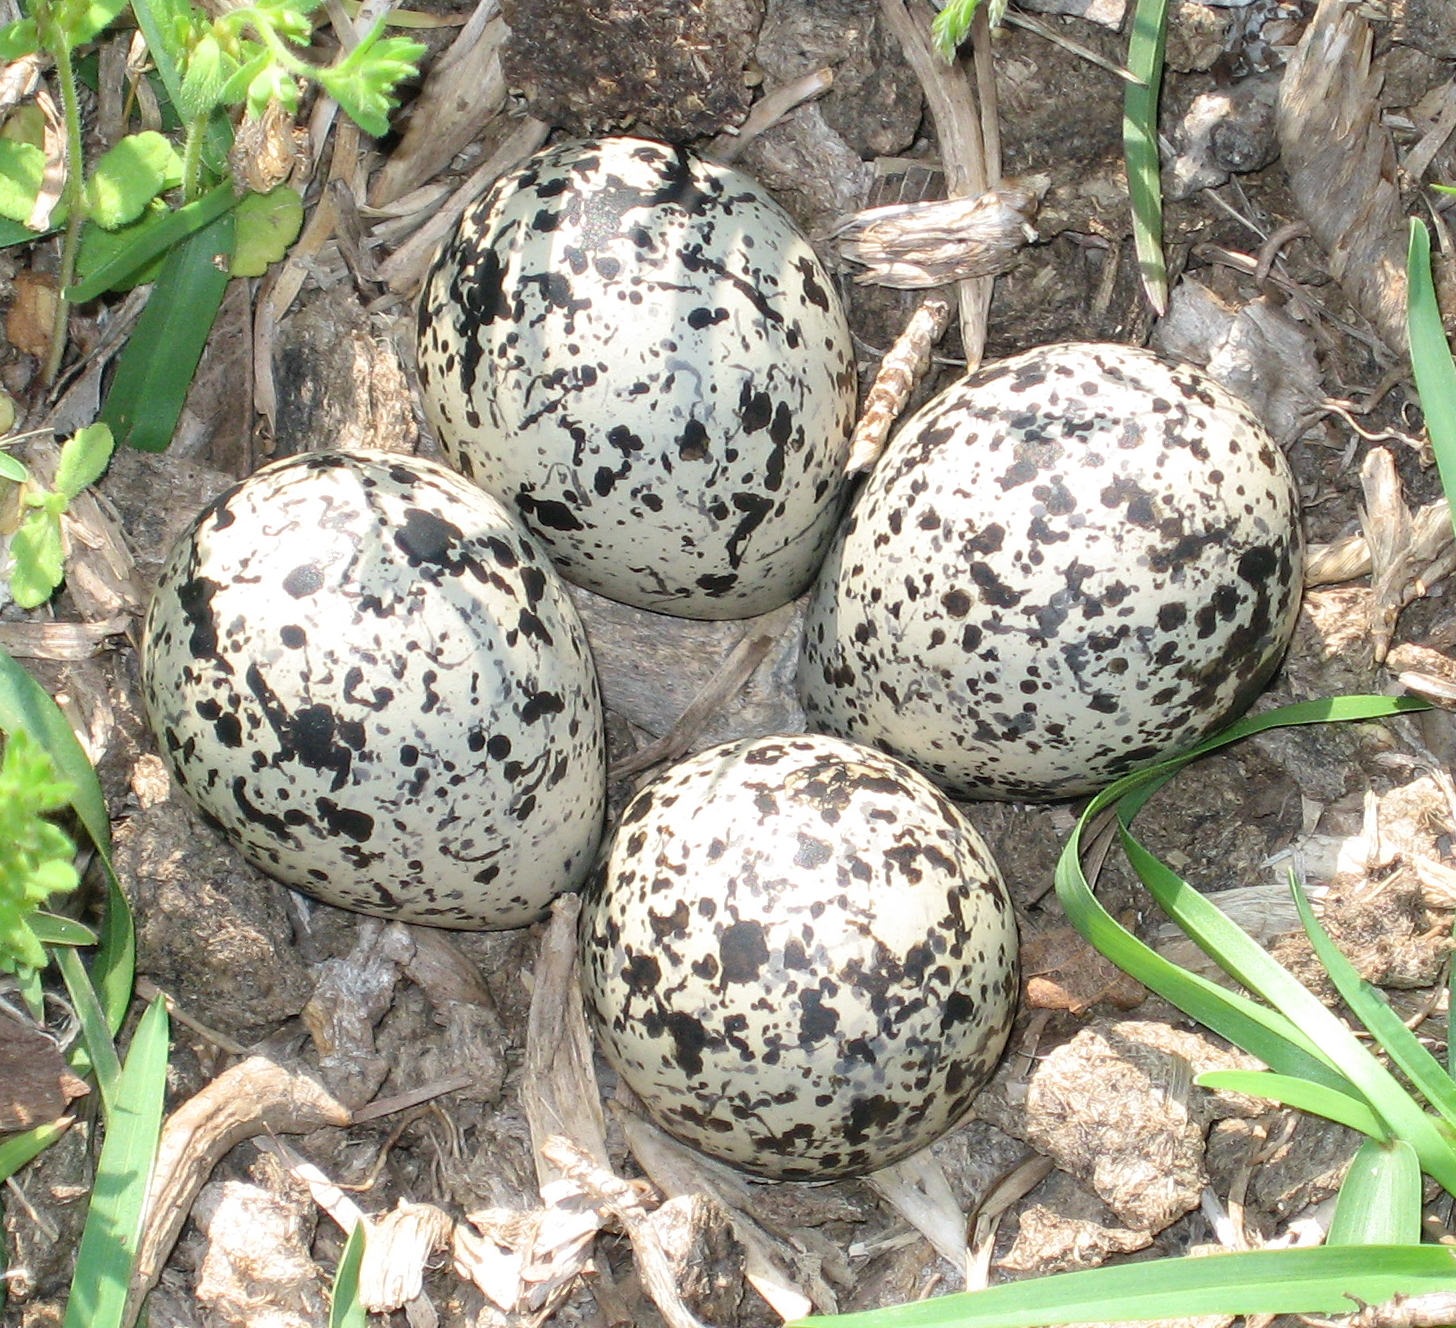 Des dinosaures-oiseaux qui pondaient leurs œufs dans des nids communs -  Sciences et Avenir